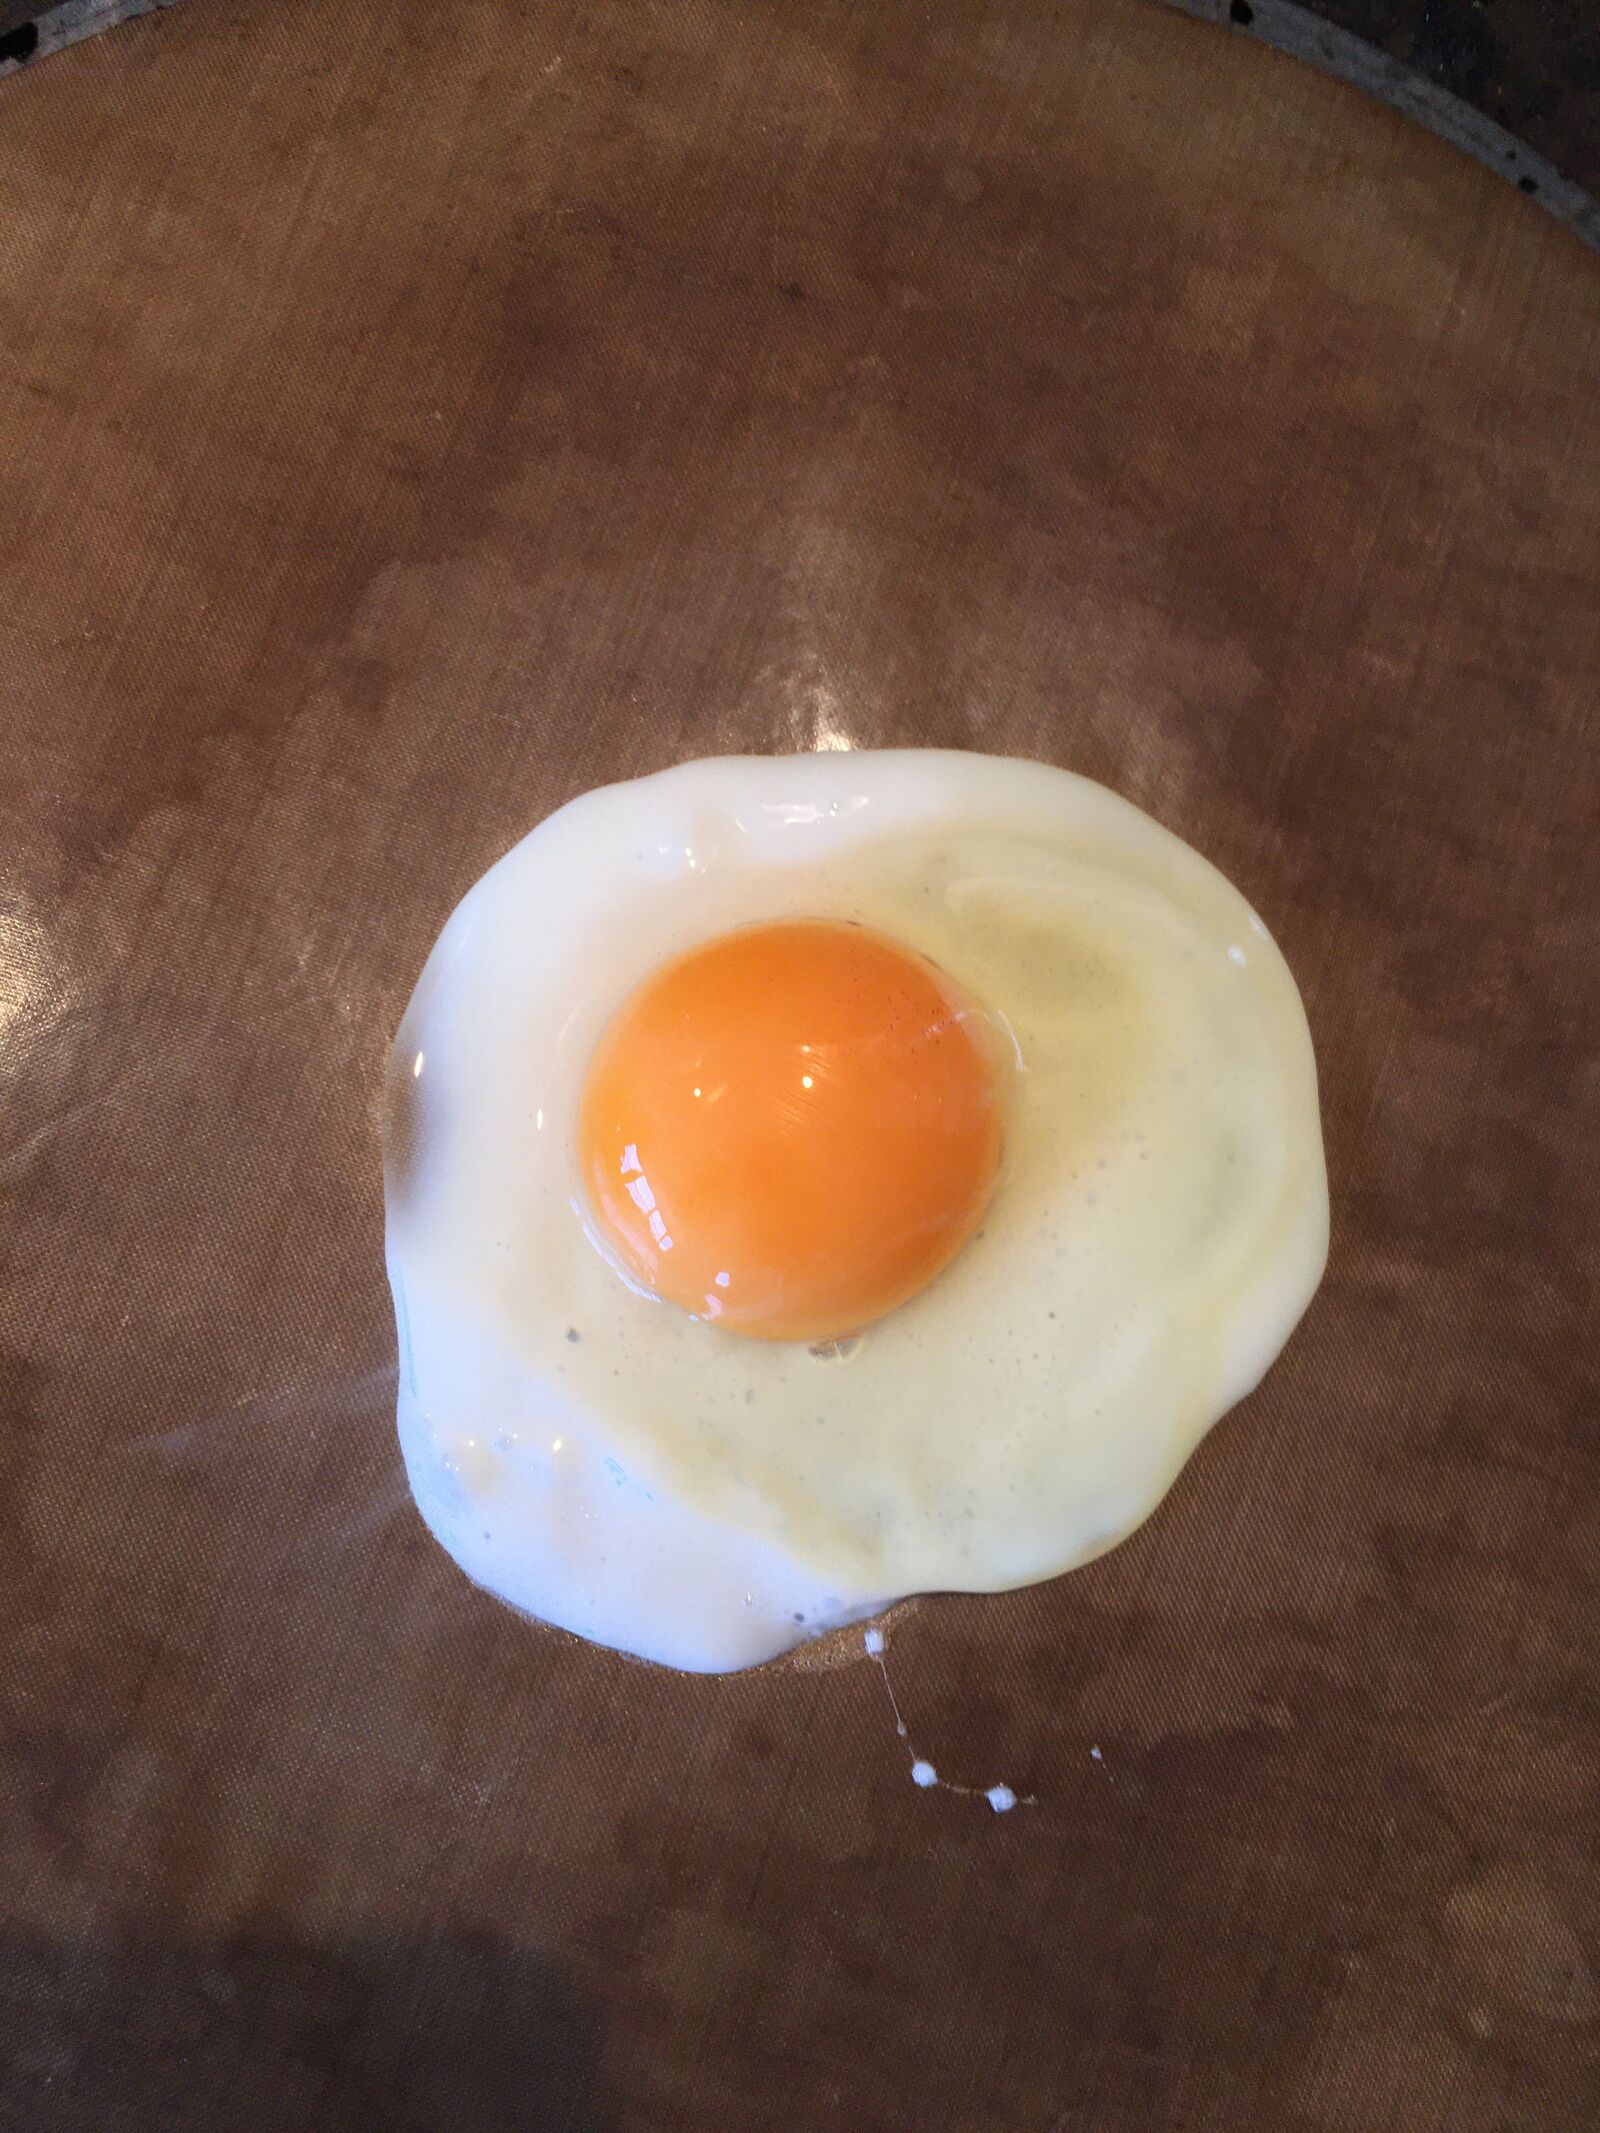 Apple iPhone SE (1st generation) sample photo. Egg, fried, yolk photography